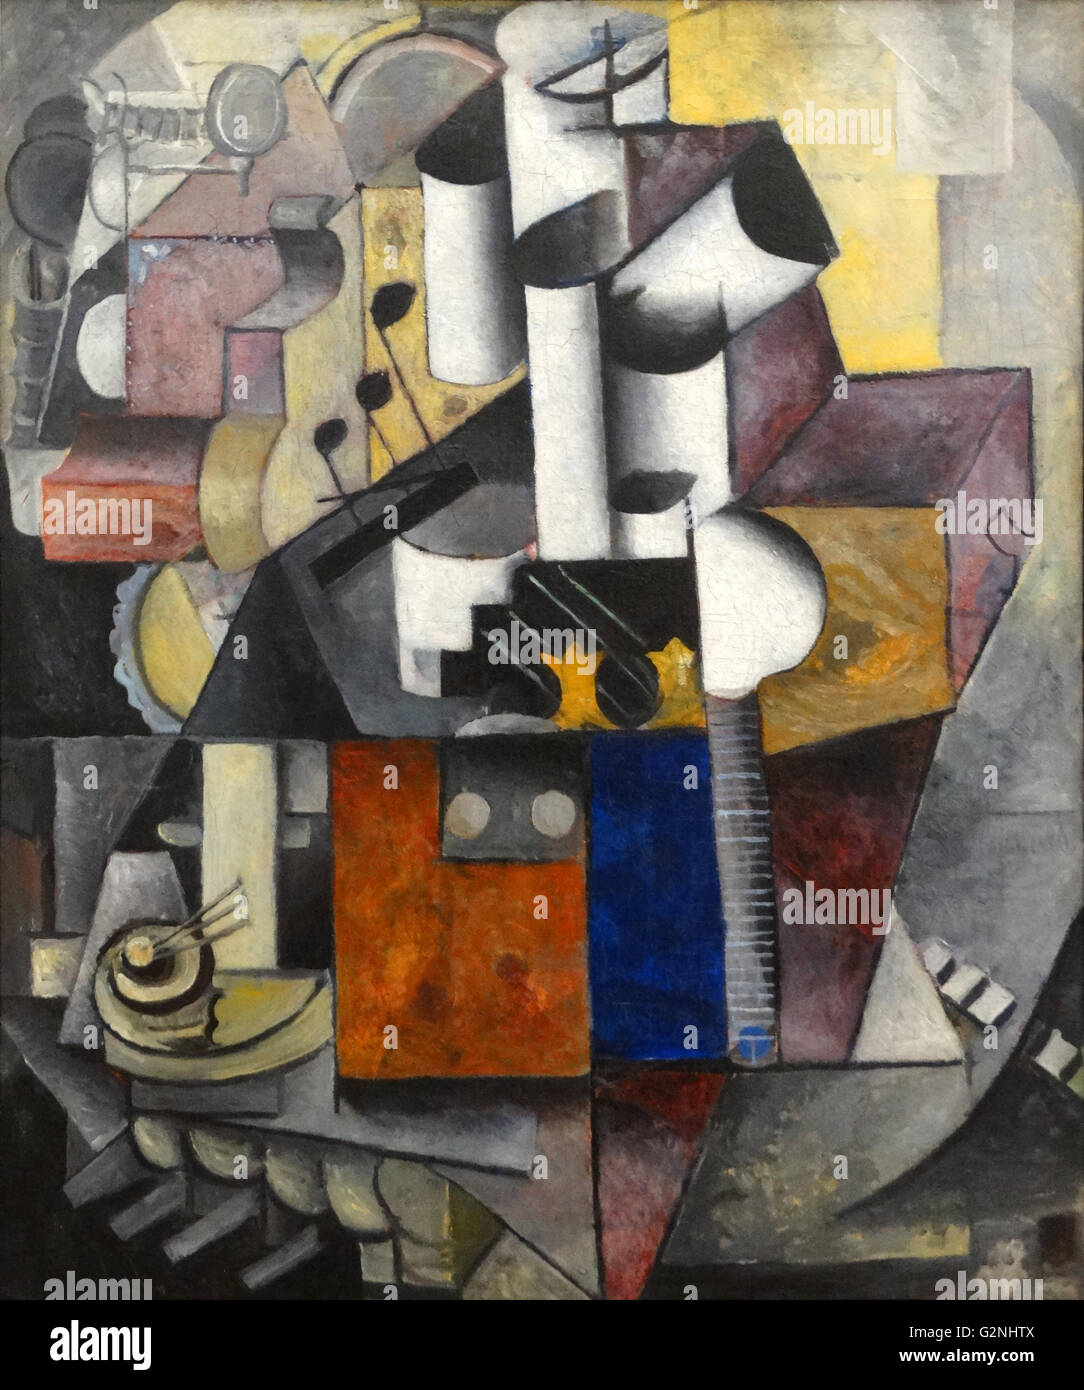 Lampada / strumenti musicali (olio su tela) da Kazimir Malevich (1879-1935). Kazimir Malevich era un pittore russo e teorico dell'arte. Egli è stato un pioniere della geometrica arte astratta e l'ordinante dell' avant-garde, supremazia movimento. Foto Stock